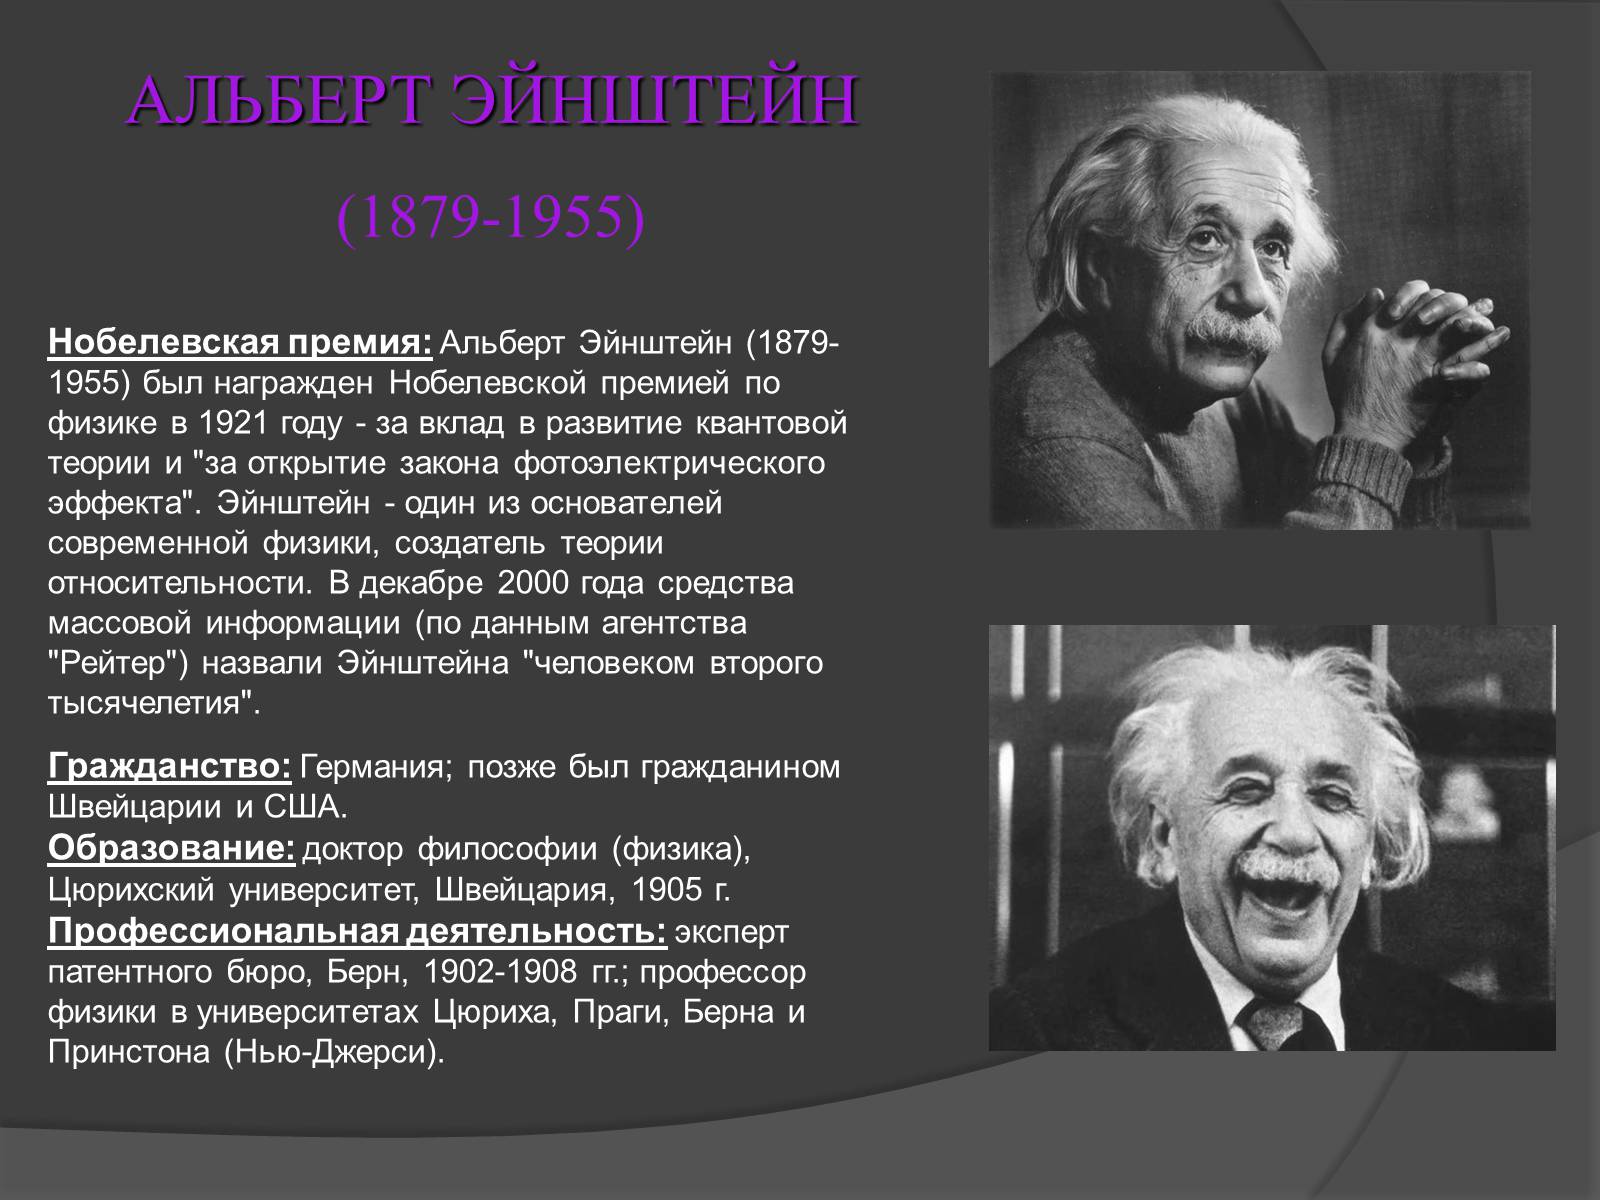 Наука люди знаменитые. Эйнштейн получил Нобелевскую премию по физике в 1921 году.